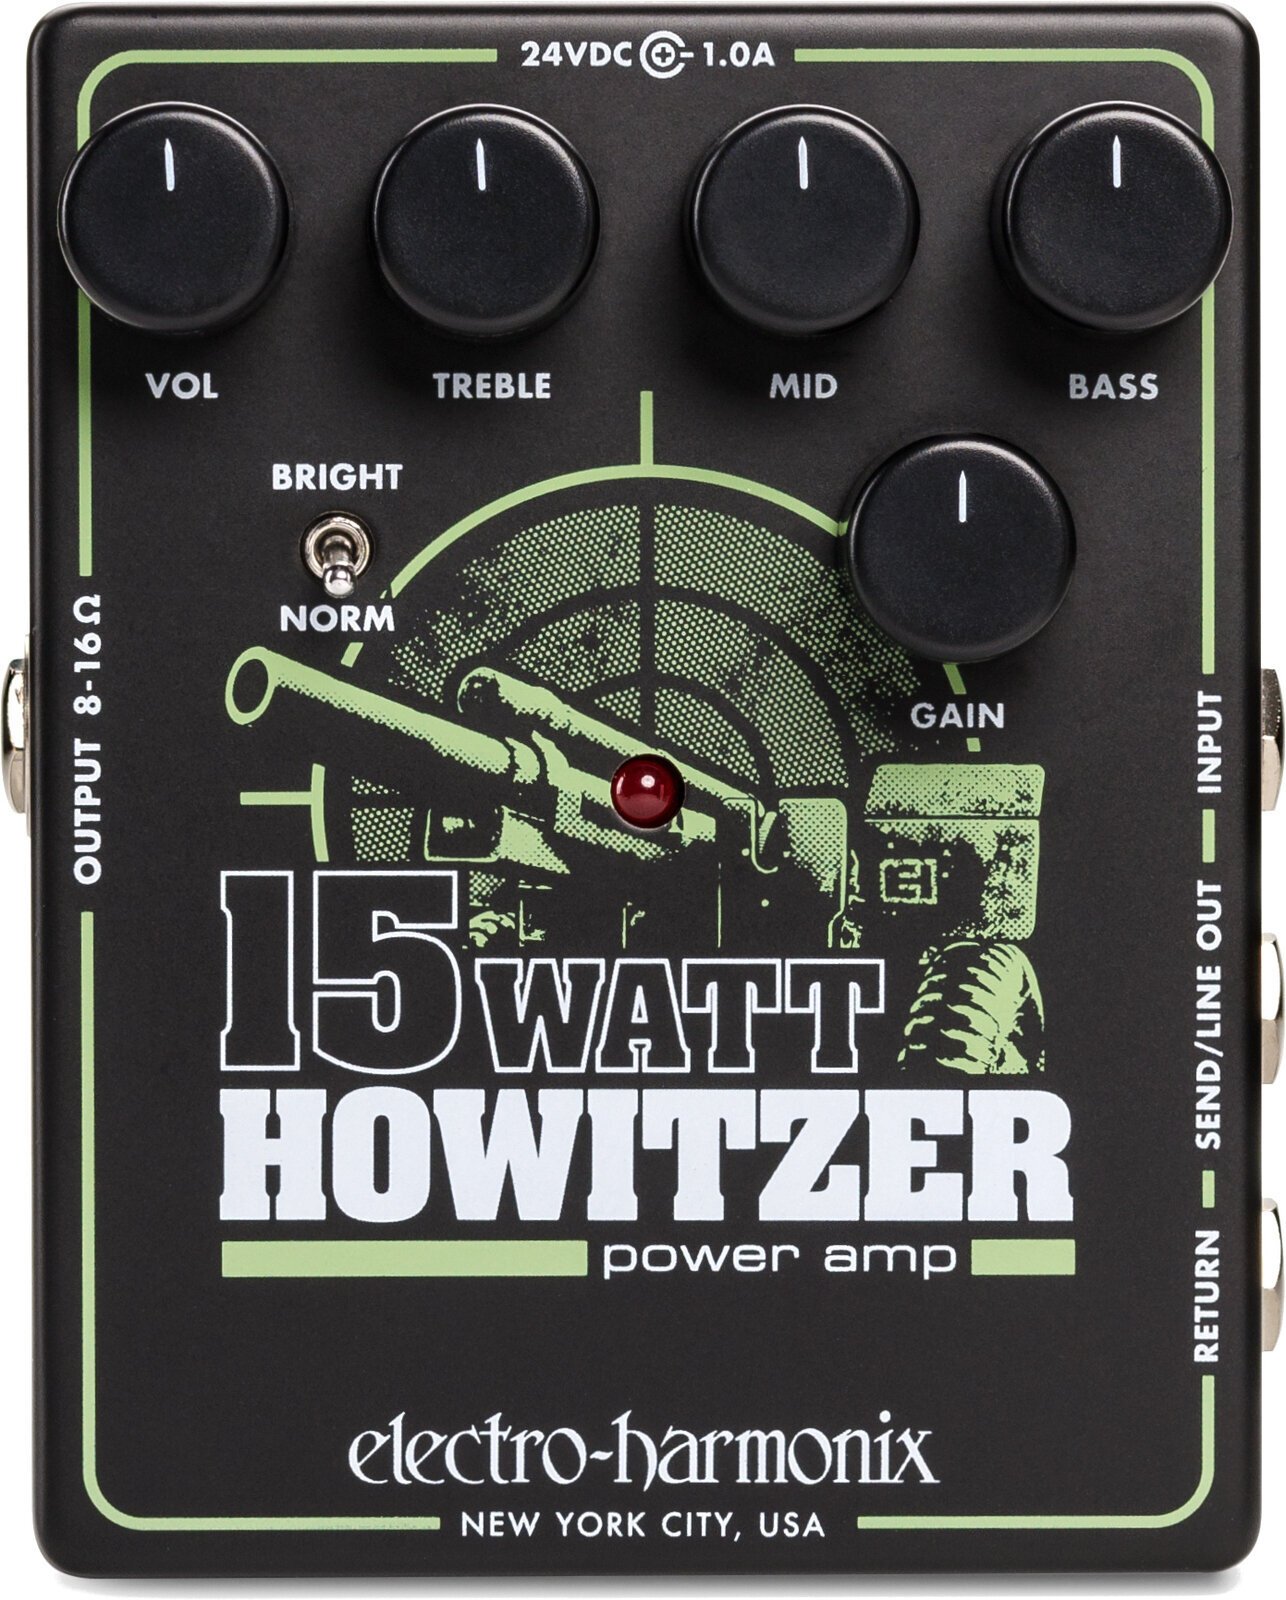 Gitarrenverstärker Electro Harmonix 15W Howitzer